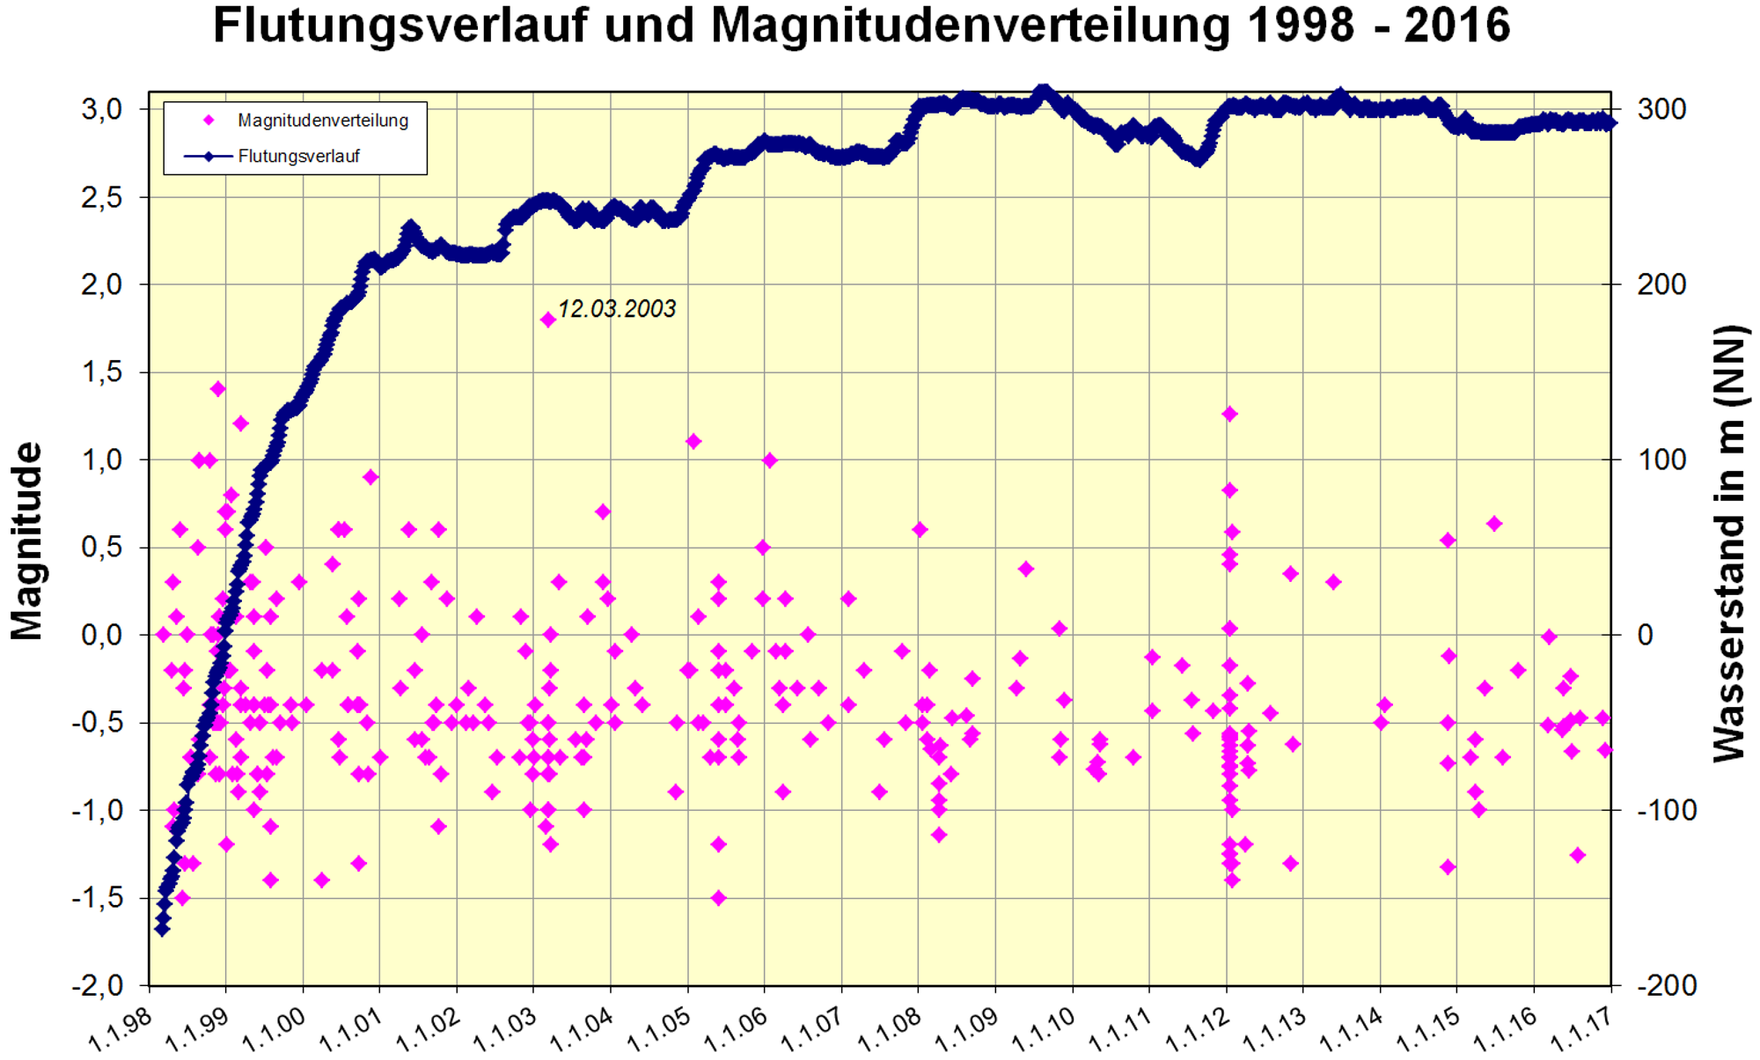 Das Bild zeigt den Flutungsverlauf und die Magnitudenverteilung von 1998 bis 2016.